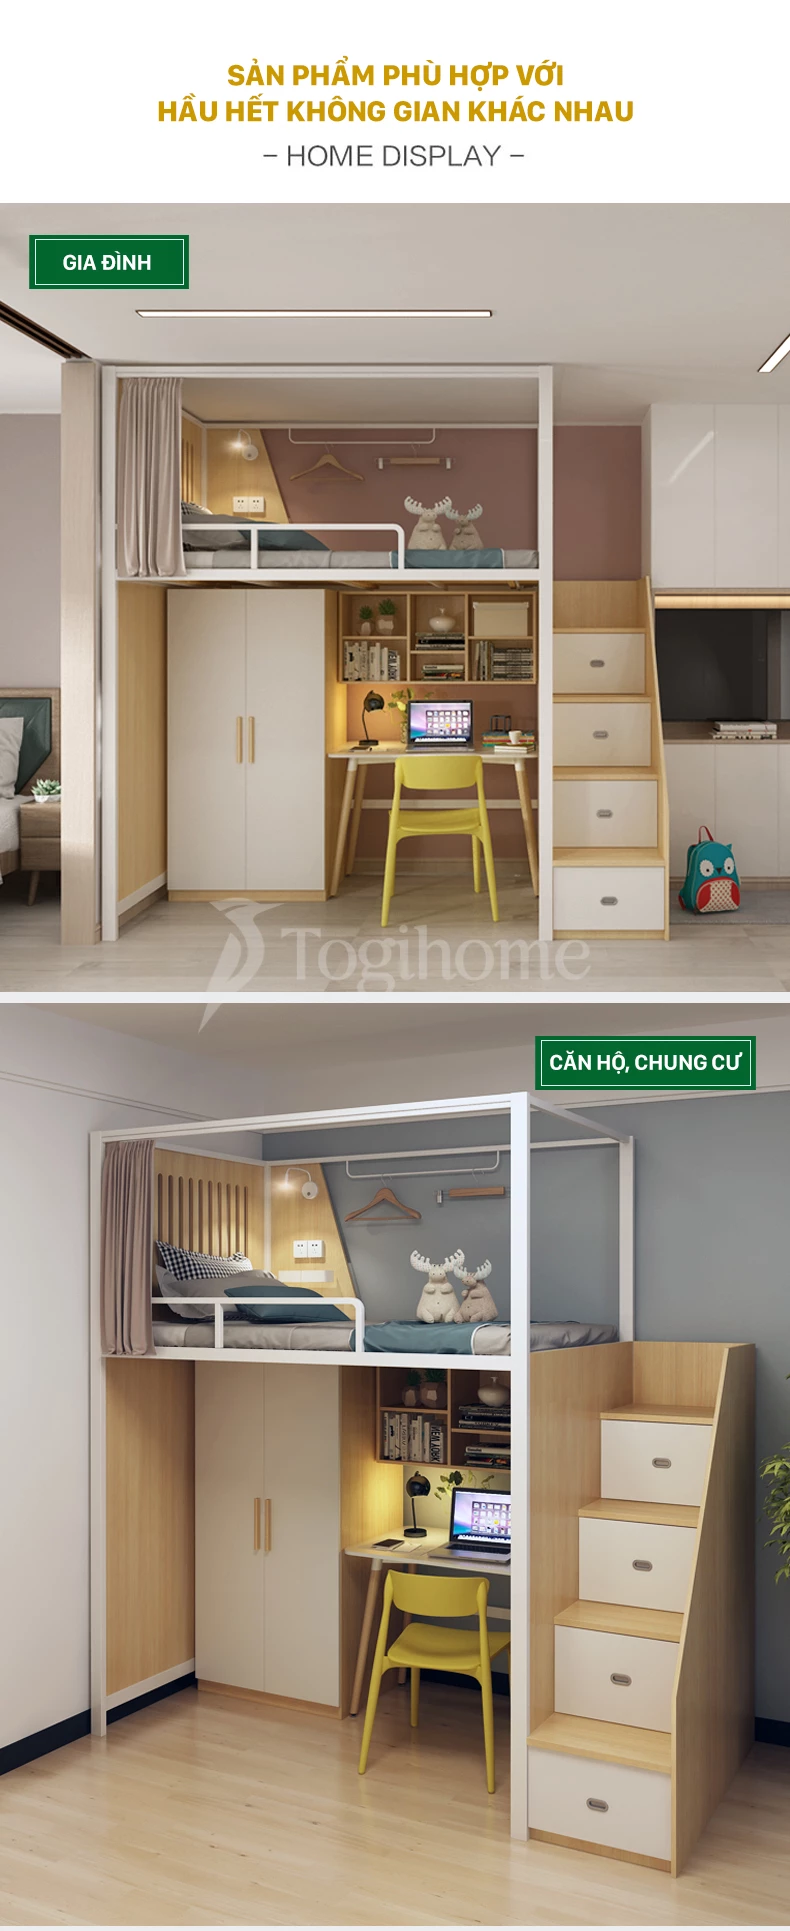 Bộ giường gỗ thép GSTE007 kết hợp tủ/bàn làm việc và tủ thang đa năng, phong cách Bắc Âu phù hợp với nhiều không gian